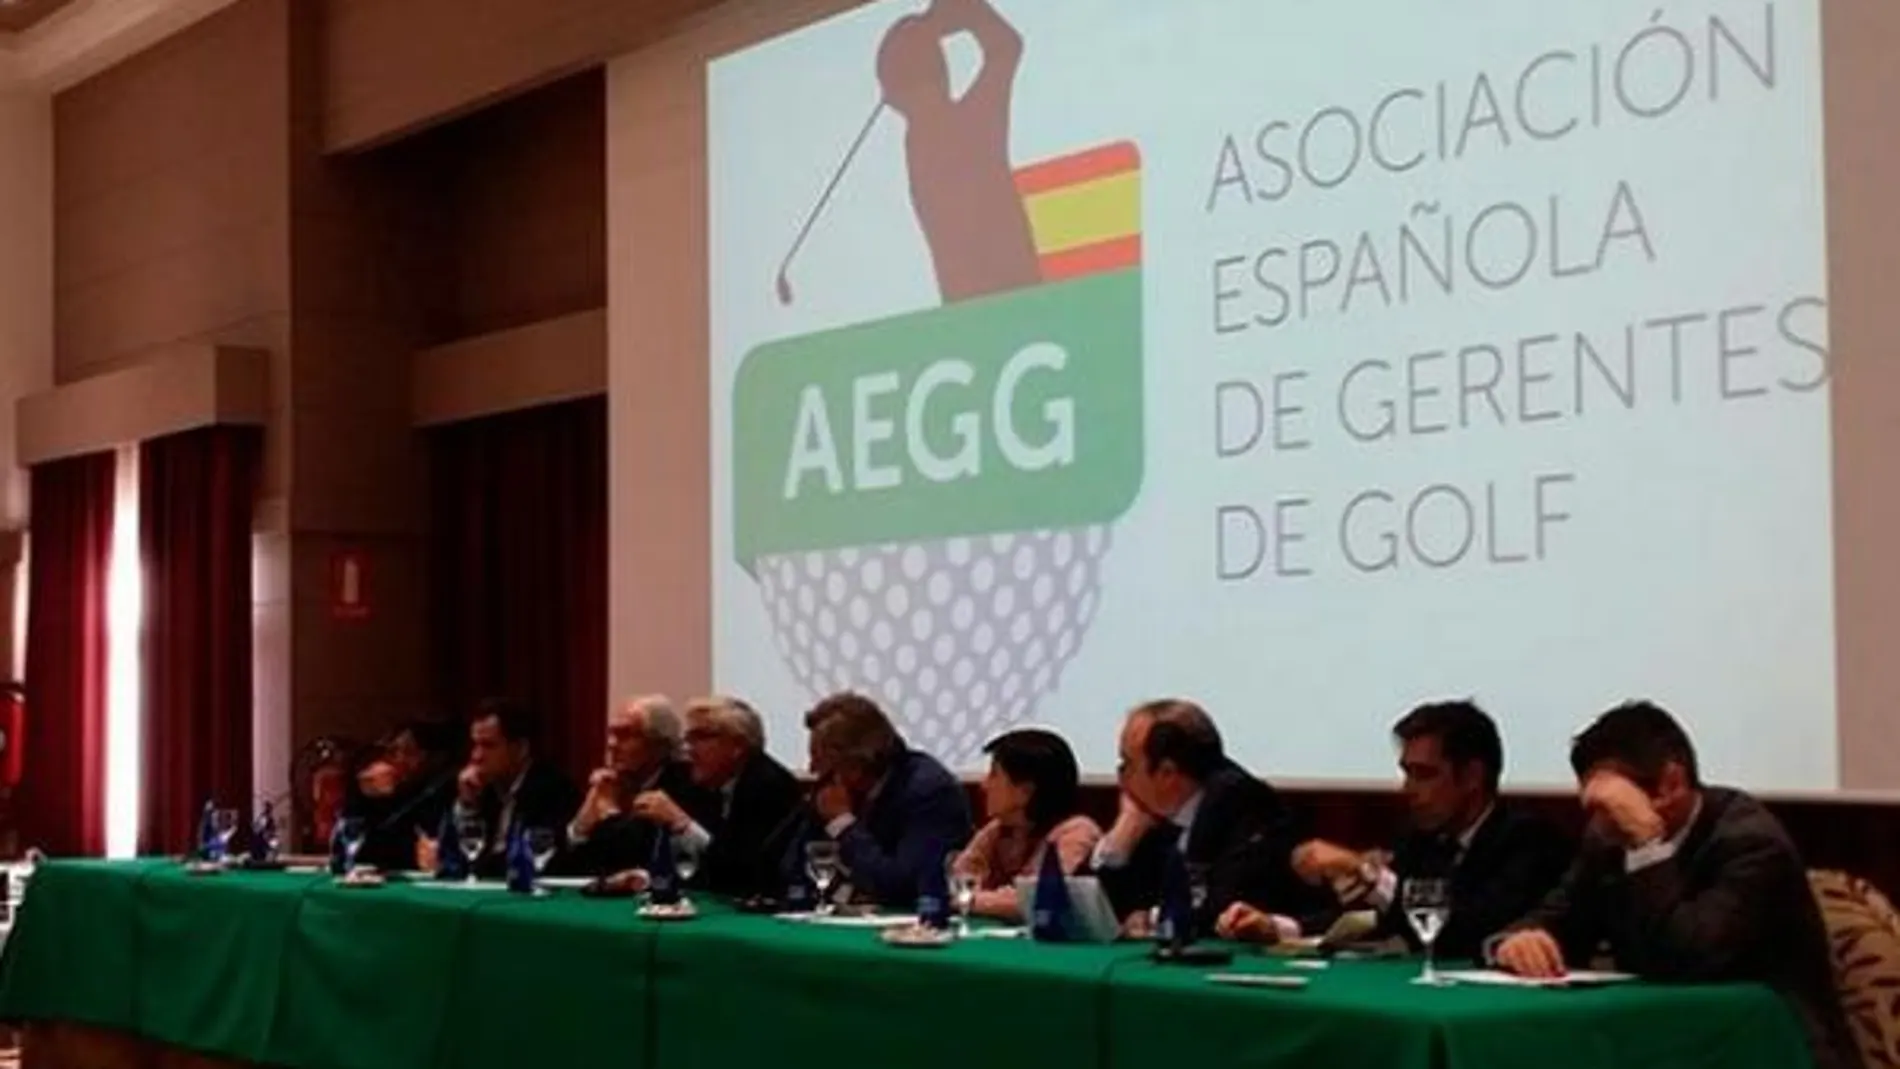 Asociación Española de Gerentes de Golf.